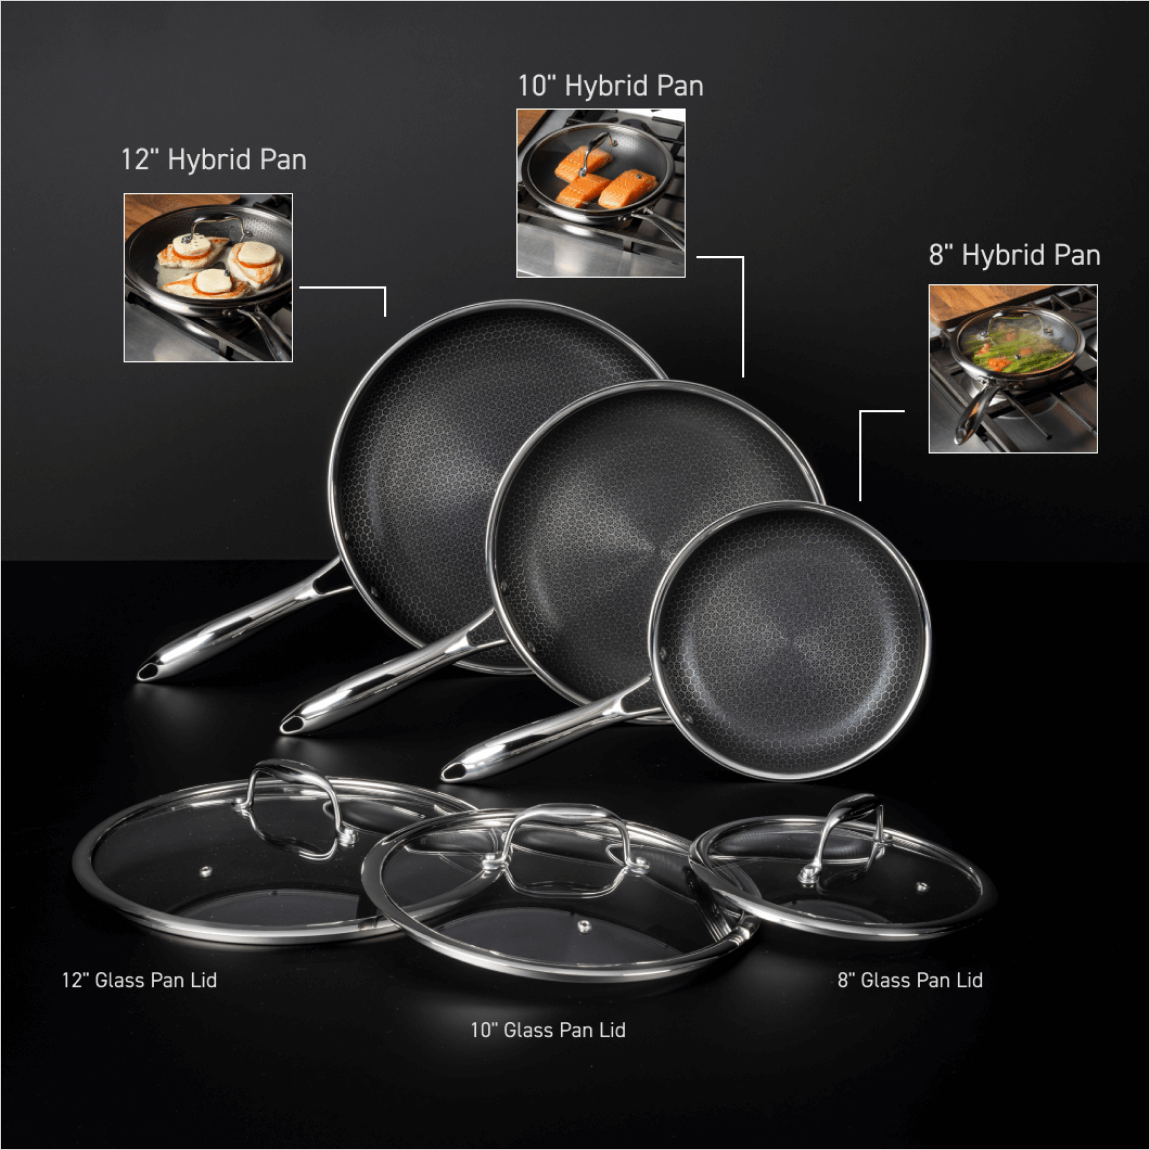 5 QT Saucepan – HexClad Cookware